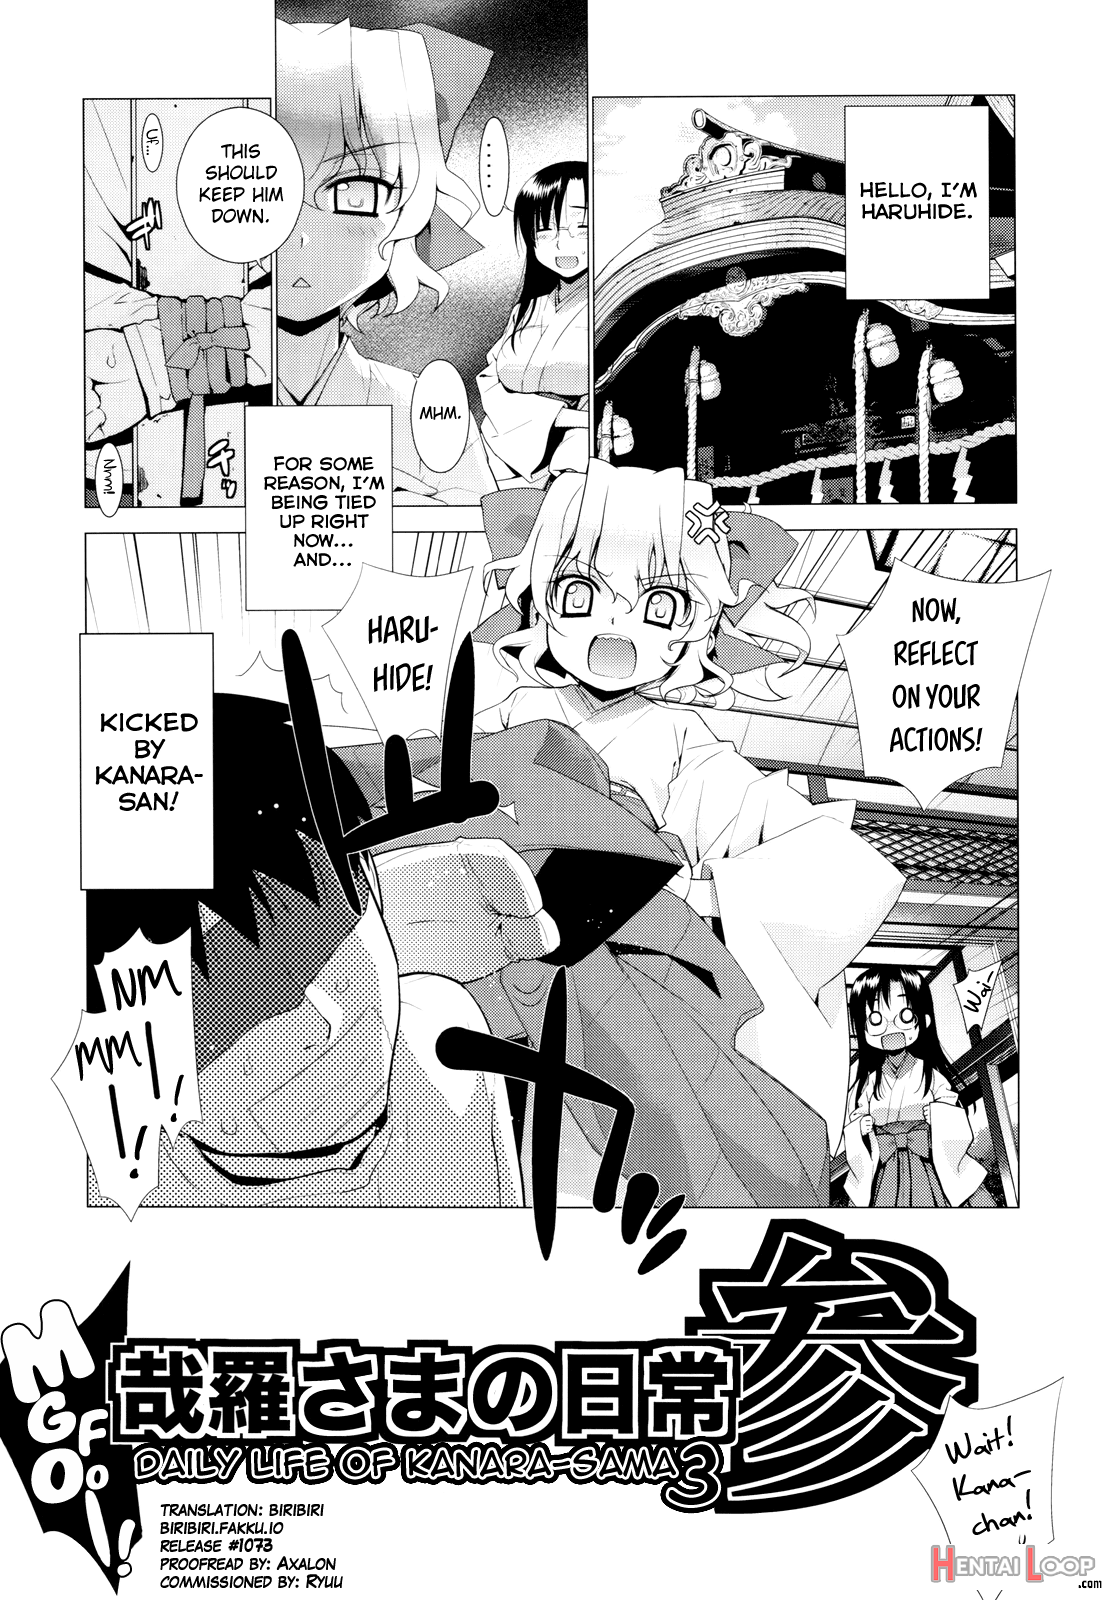 Kanara-sama No Nichijou San + Shiori page 3